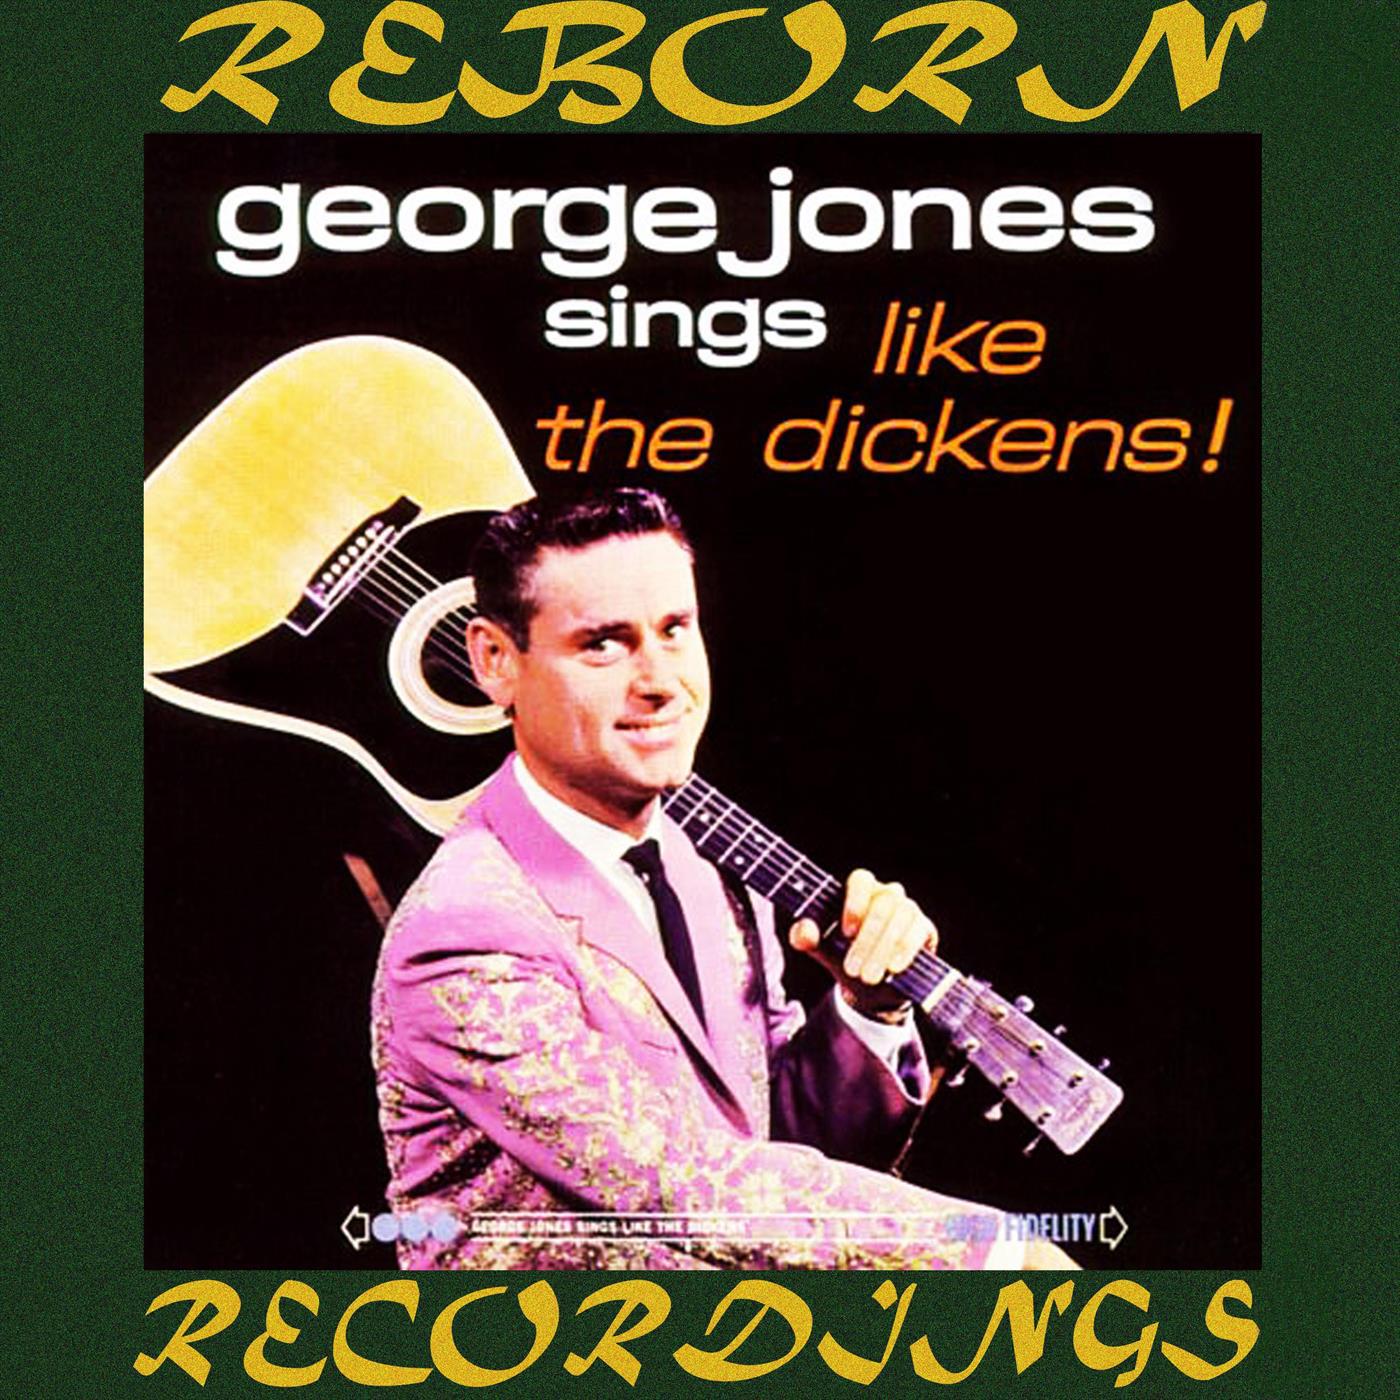 George Jones Sings Like the ******* (HD Remastered)